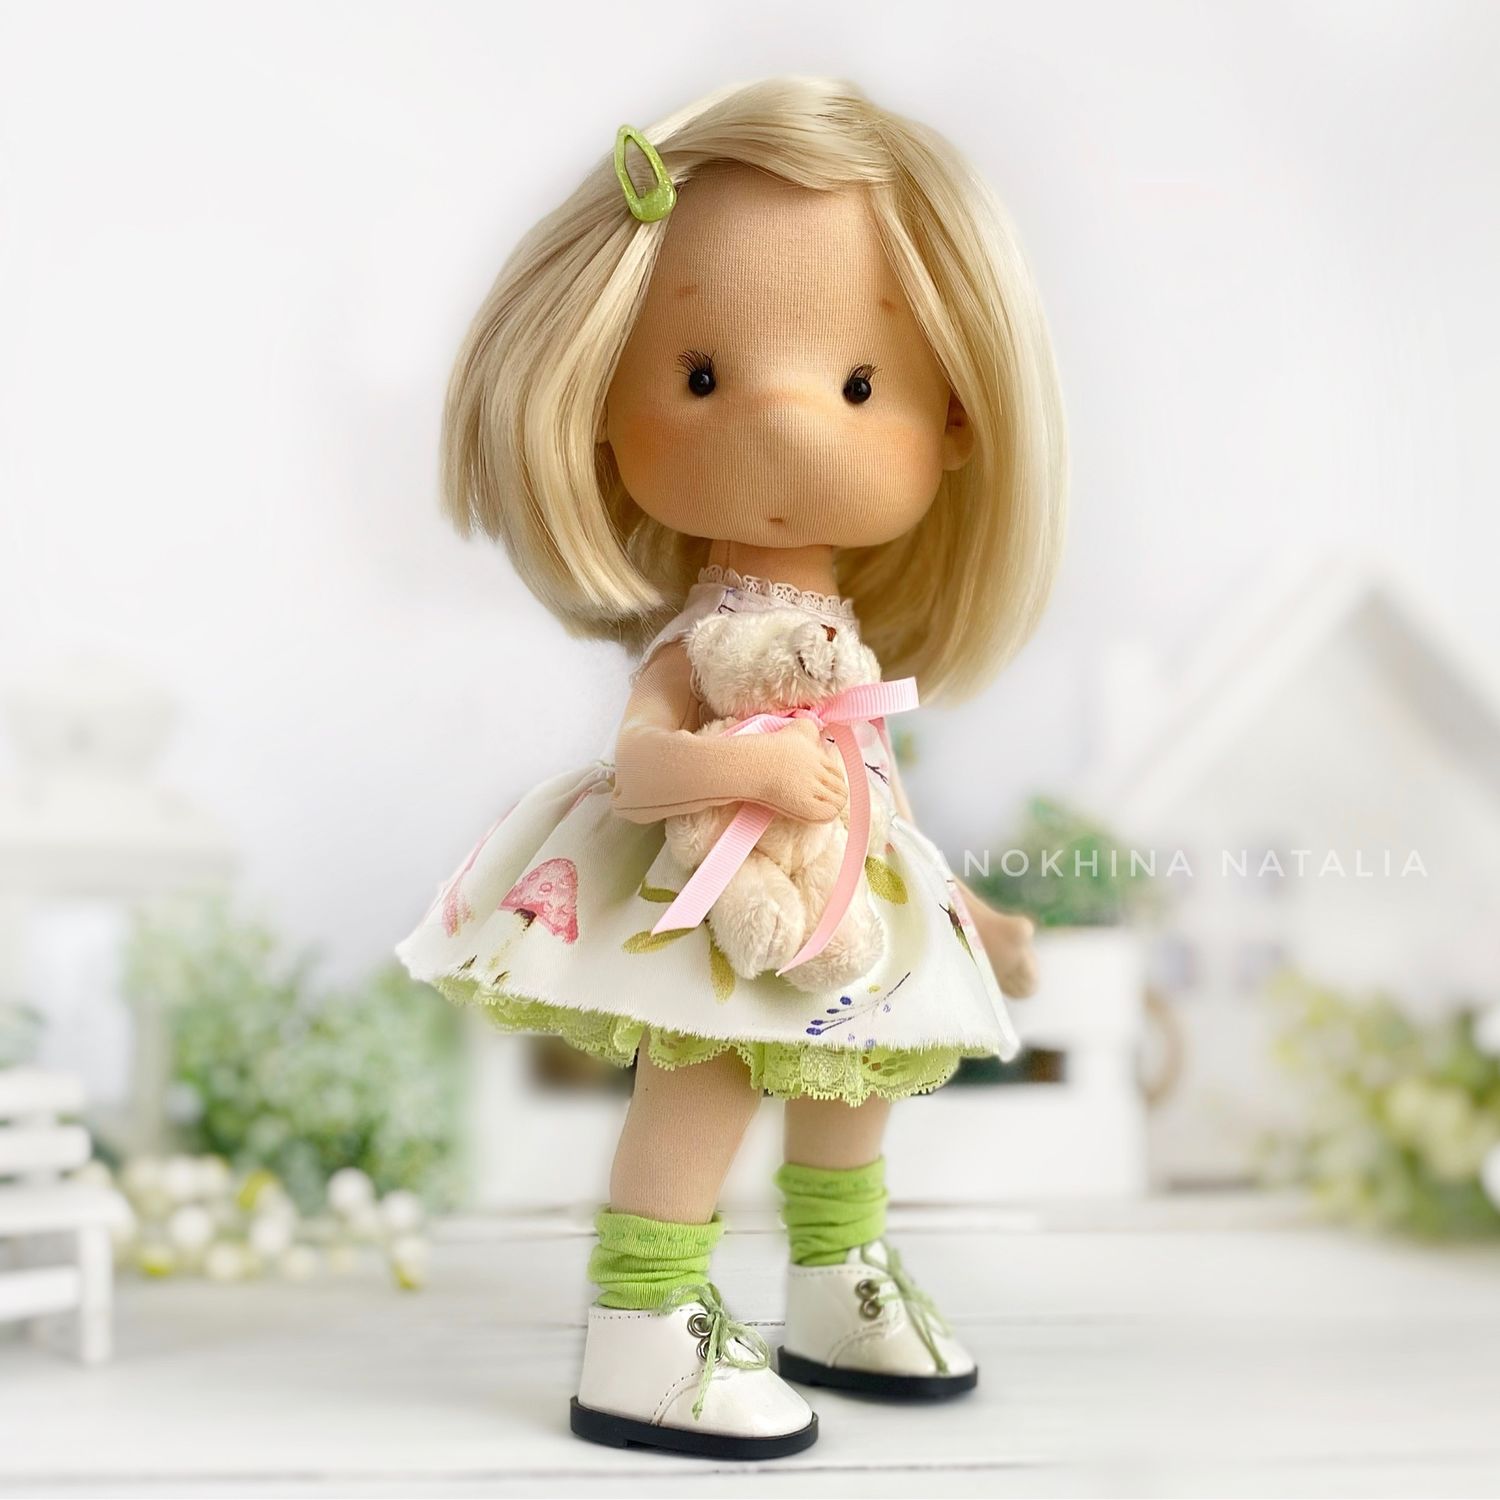 Купить интерьерные куклы ручной работы в Москве, цены на авторские текстильные куклы - Tilda-Toys